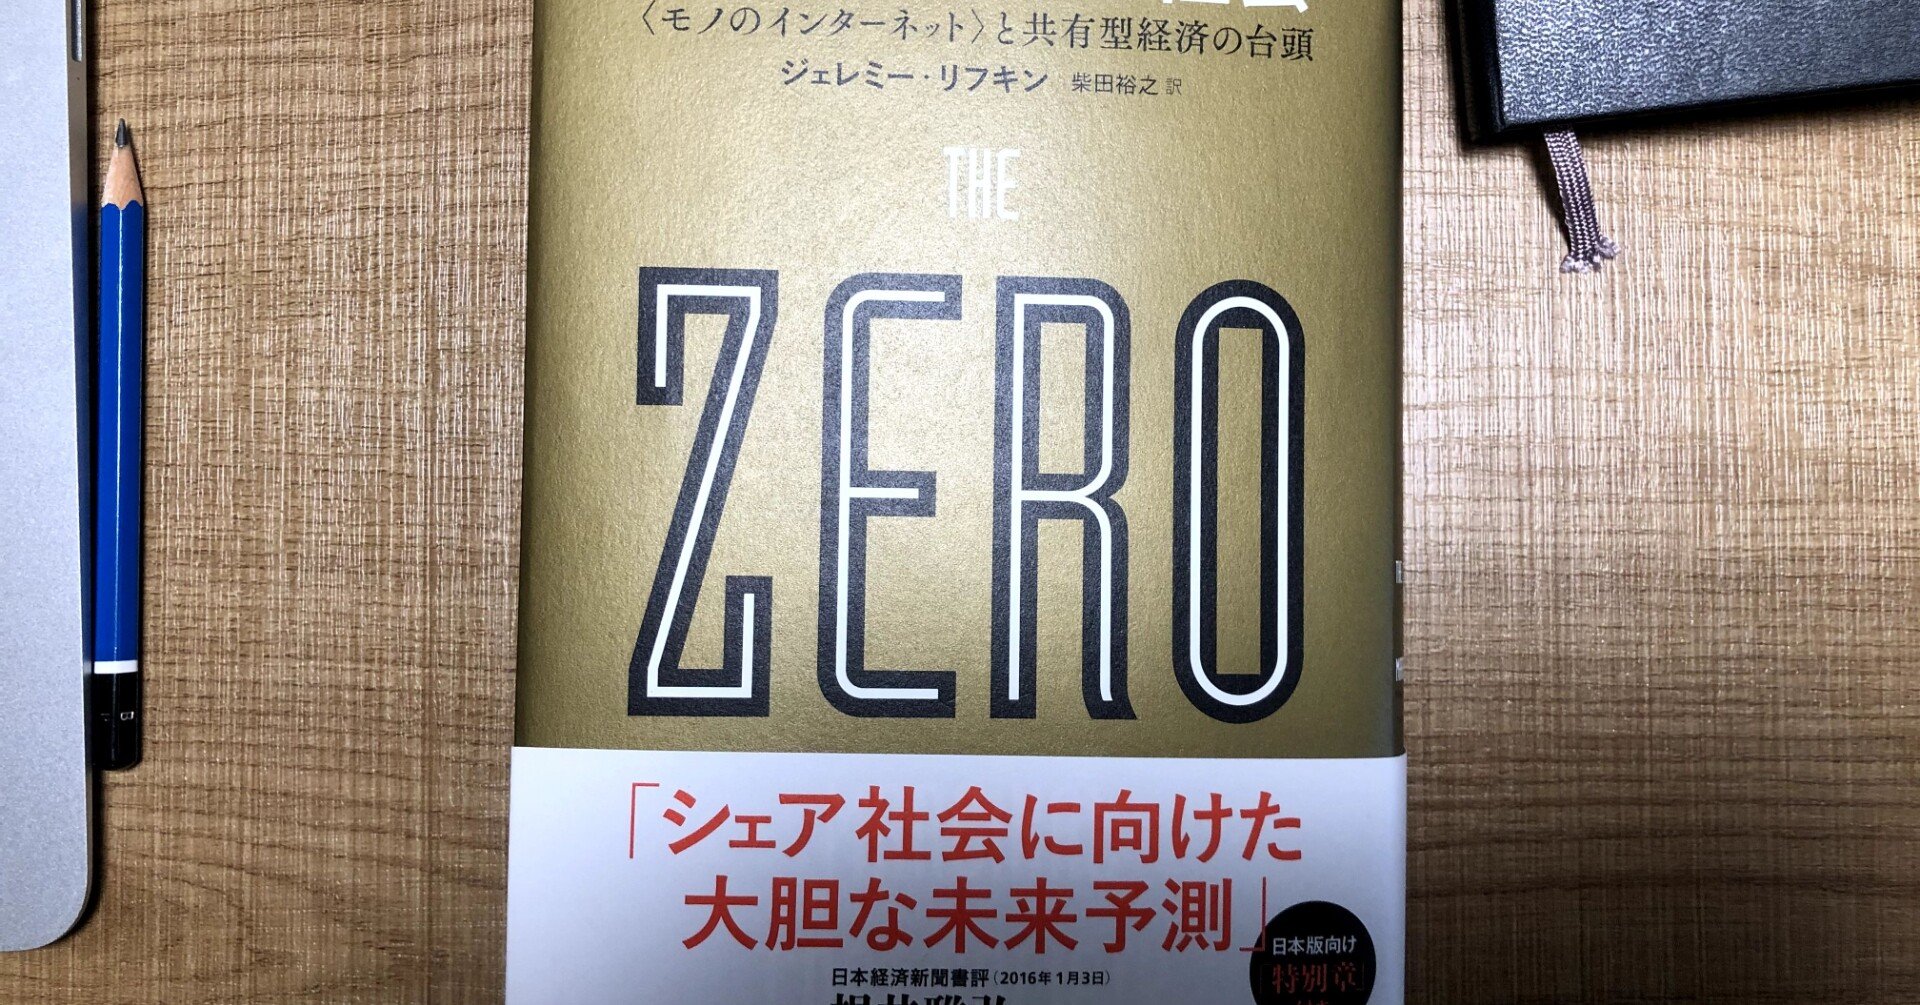 読書 1 限界費用ゼロ社会 ジェレミー リフキン 21 Ueda Note